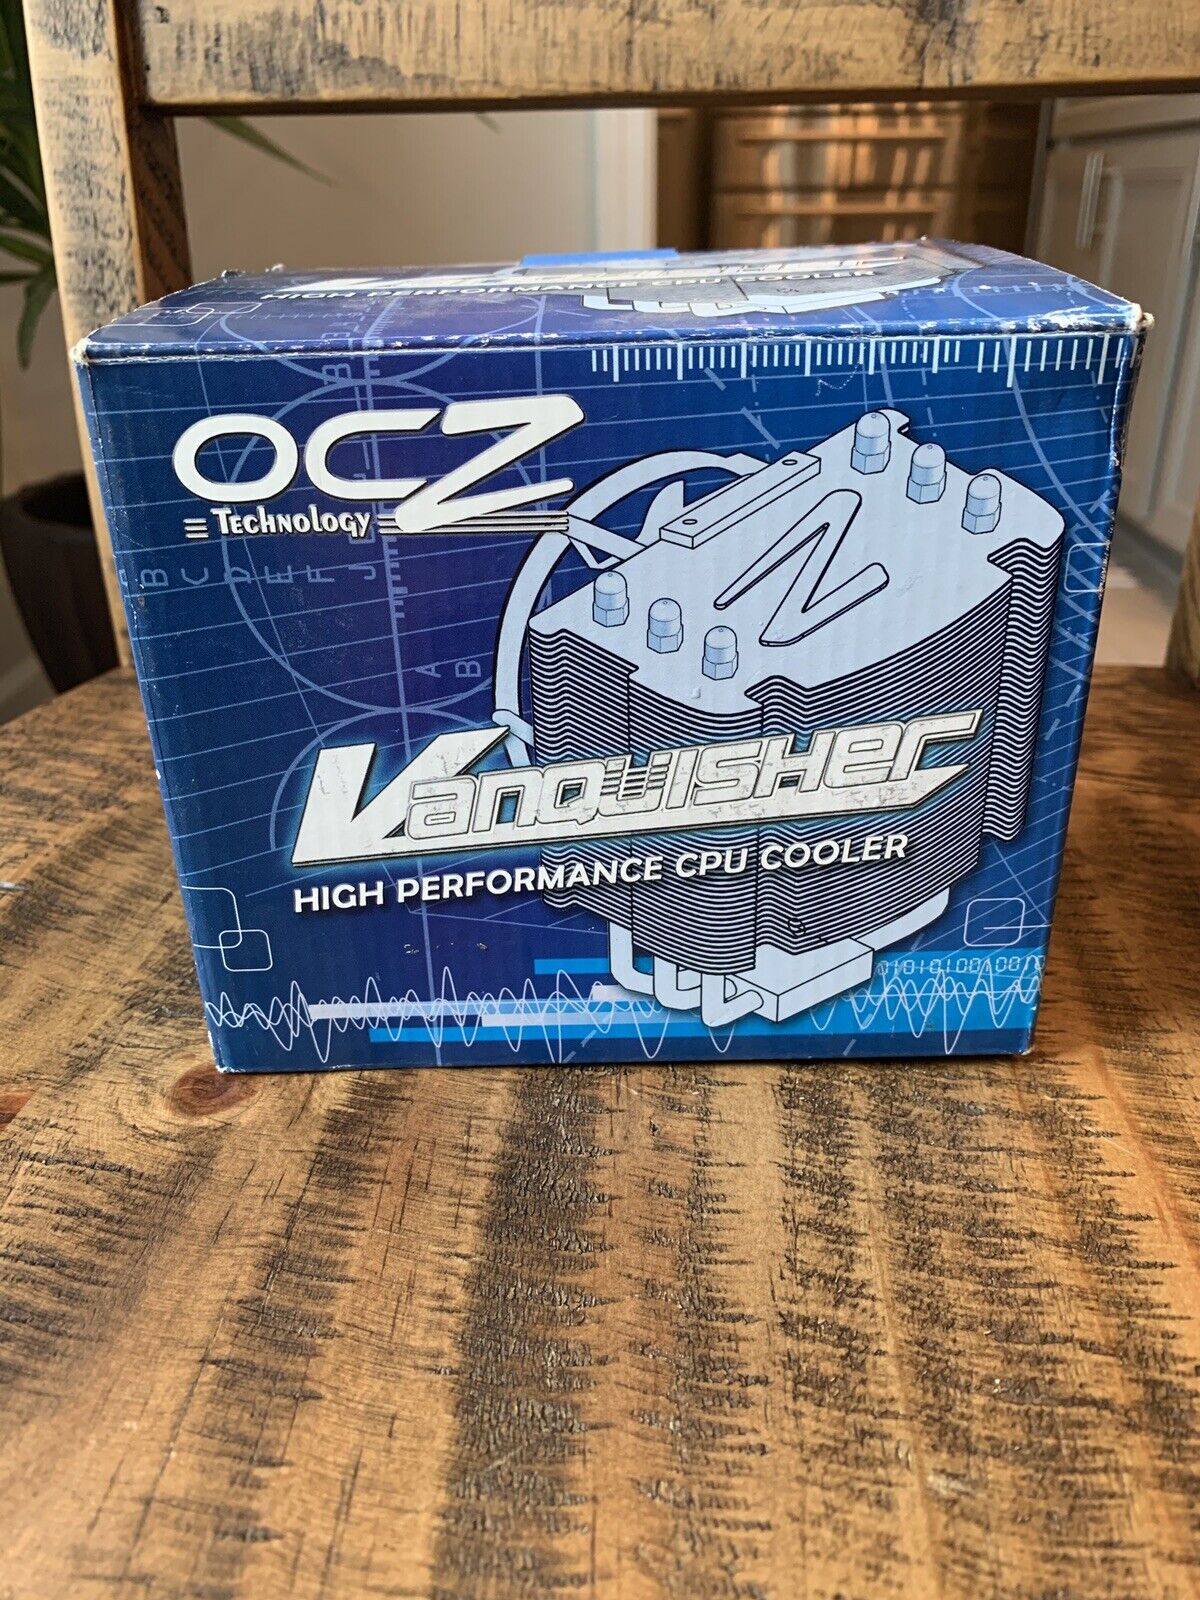 OCZ Vanquisher High Performance CPU Cooler Open Box